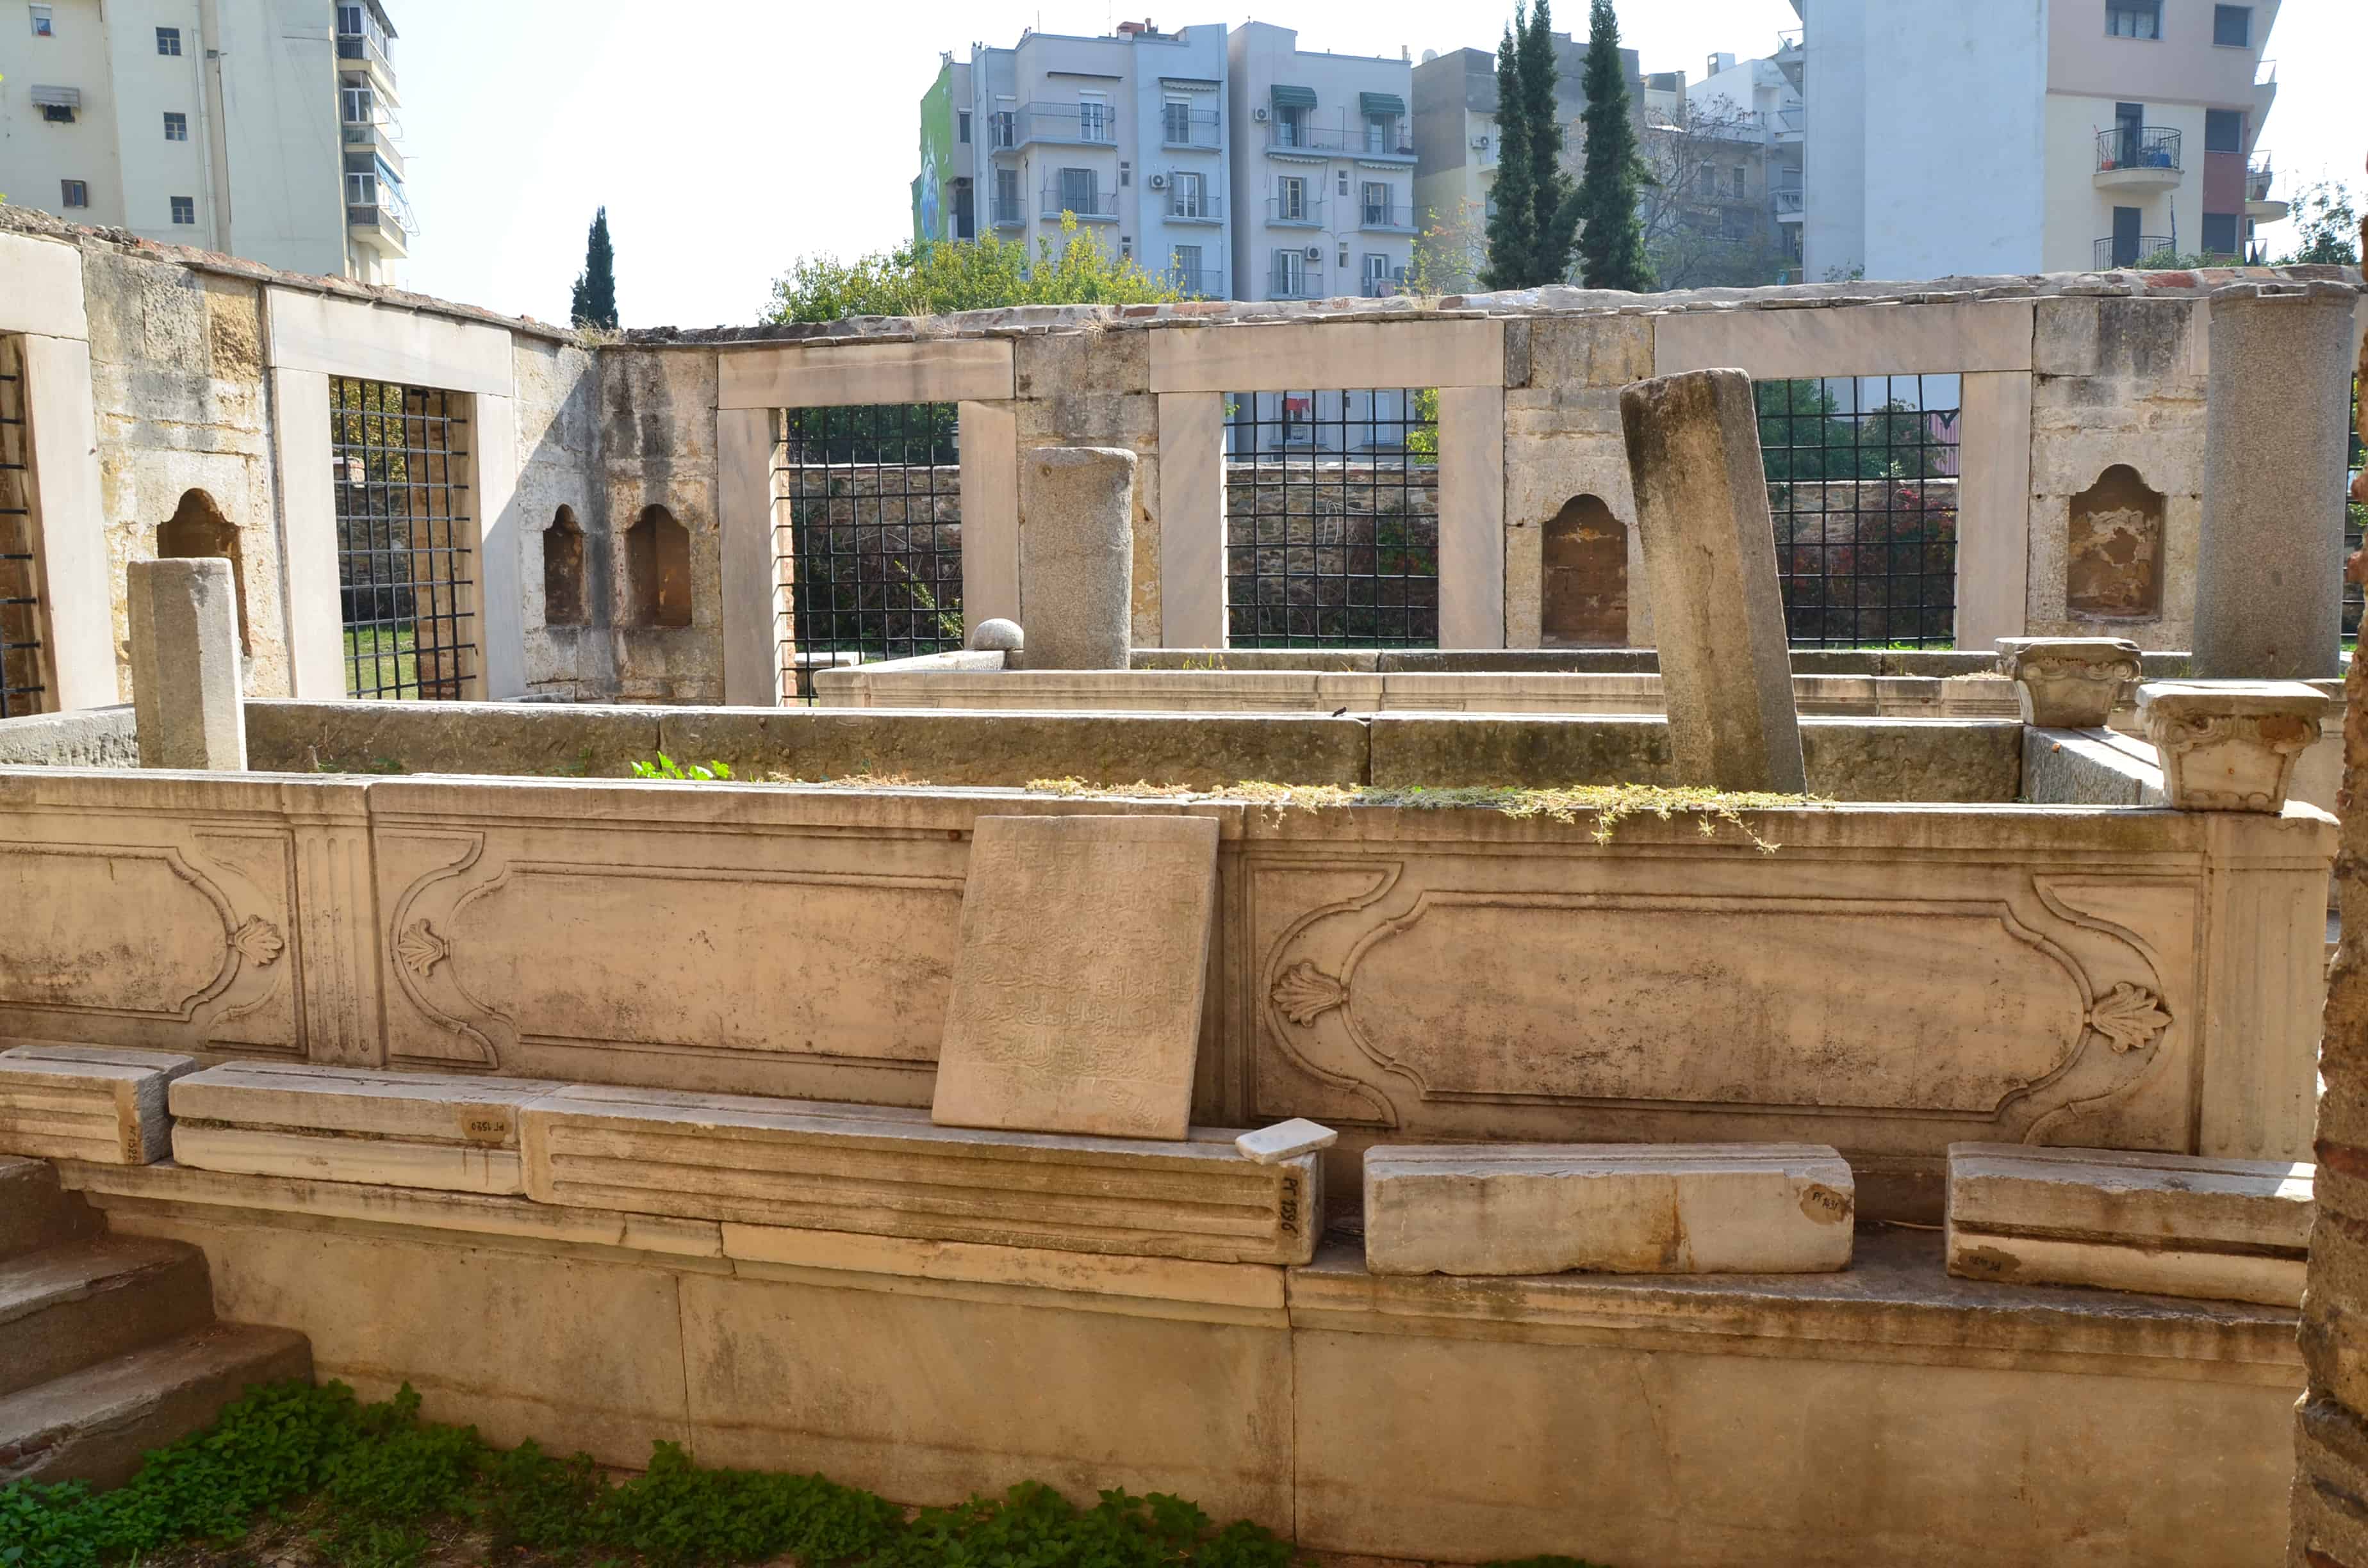 Ottoman cemetery at the Rotunda in Thessaloniki, Greece